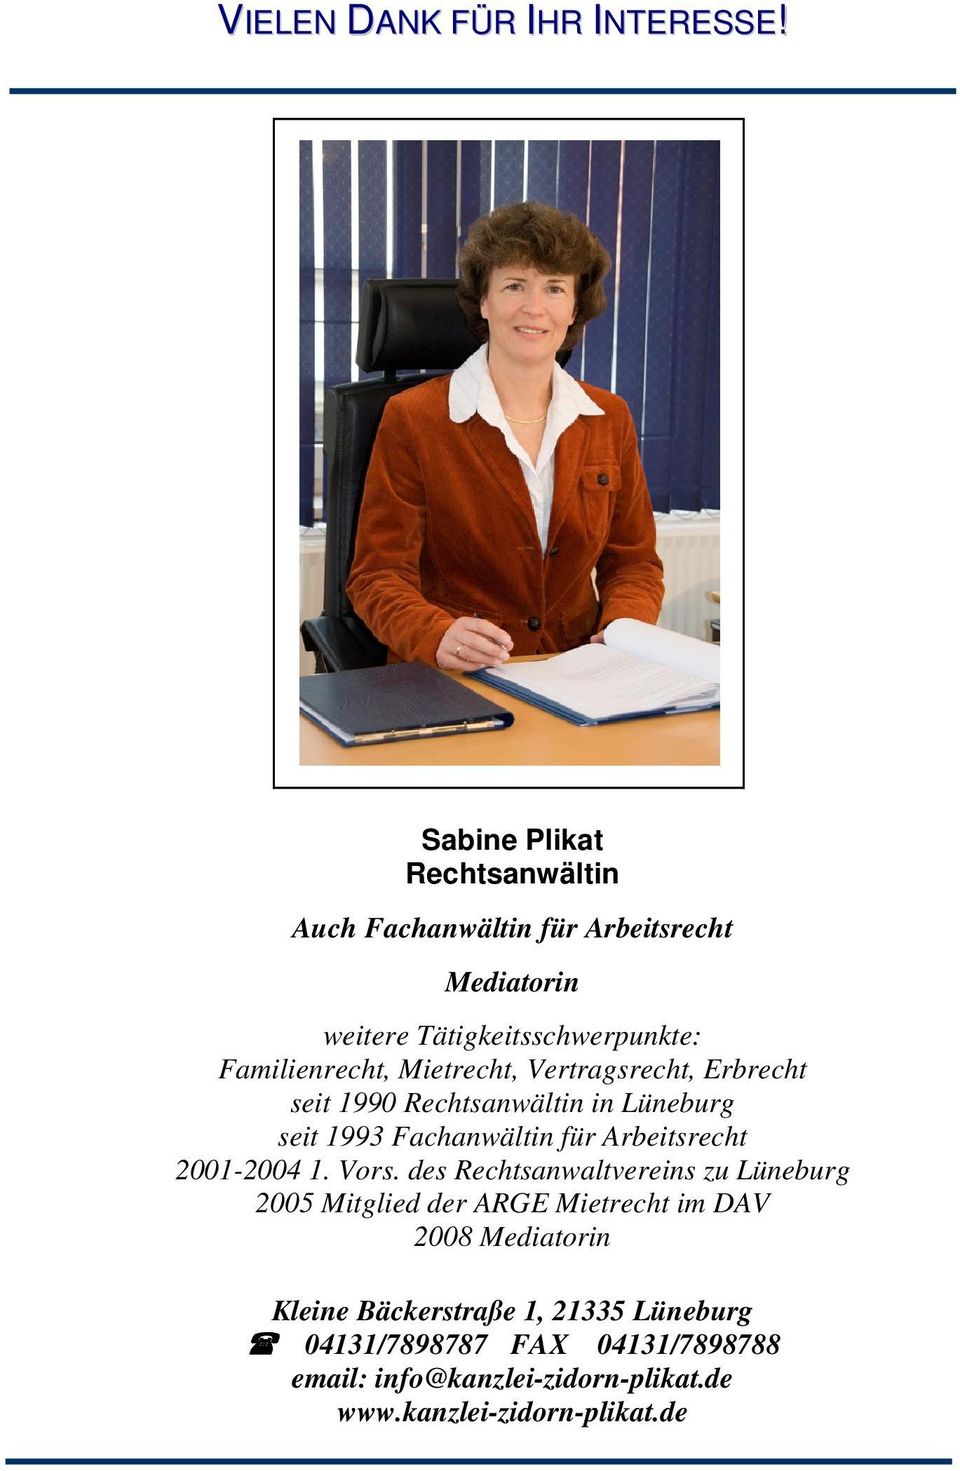 Mietrecht, Vertragsrecht, Erbrecht seit 1990 Rechtsanwältin in Lüneburg seit 1993 Fachanwältin für Arbeitsrecht 2001-2004 1.